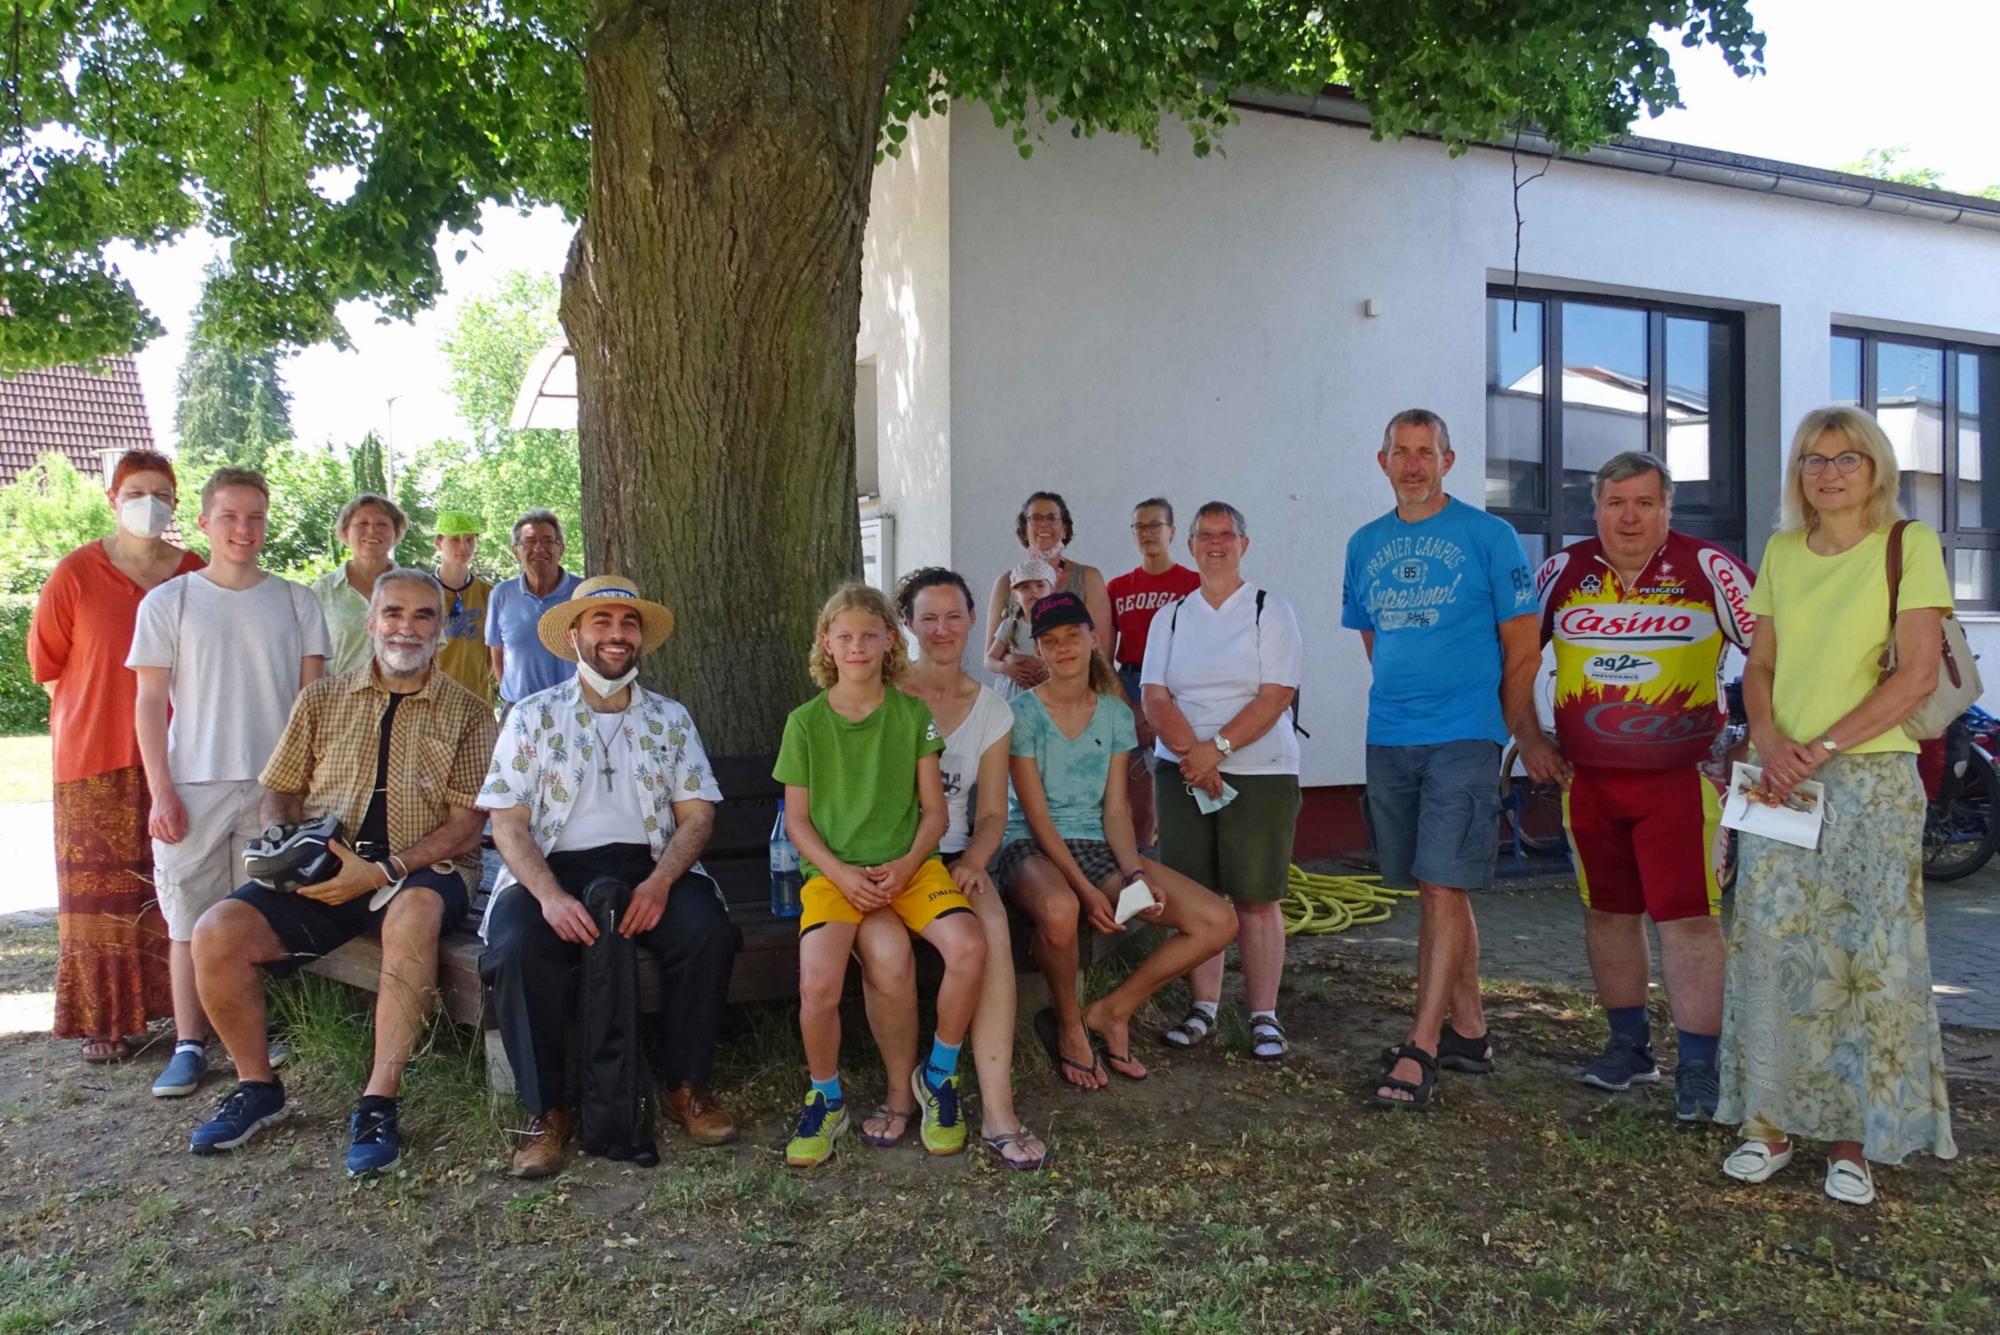 Mörfelden, 19. Juni 2021: Gemeindemitglieder aus Mörfelden mit einer gemischten Gruppe, die aus Menschen aus Astheim, Trebur, Geinsheim, Groß-Gerau und Klein-Gerau bestand.